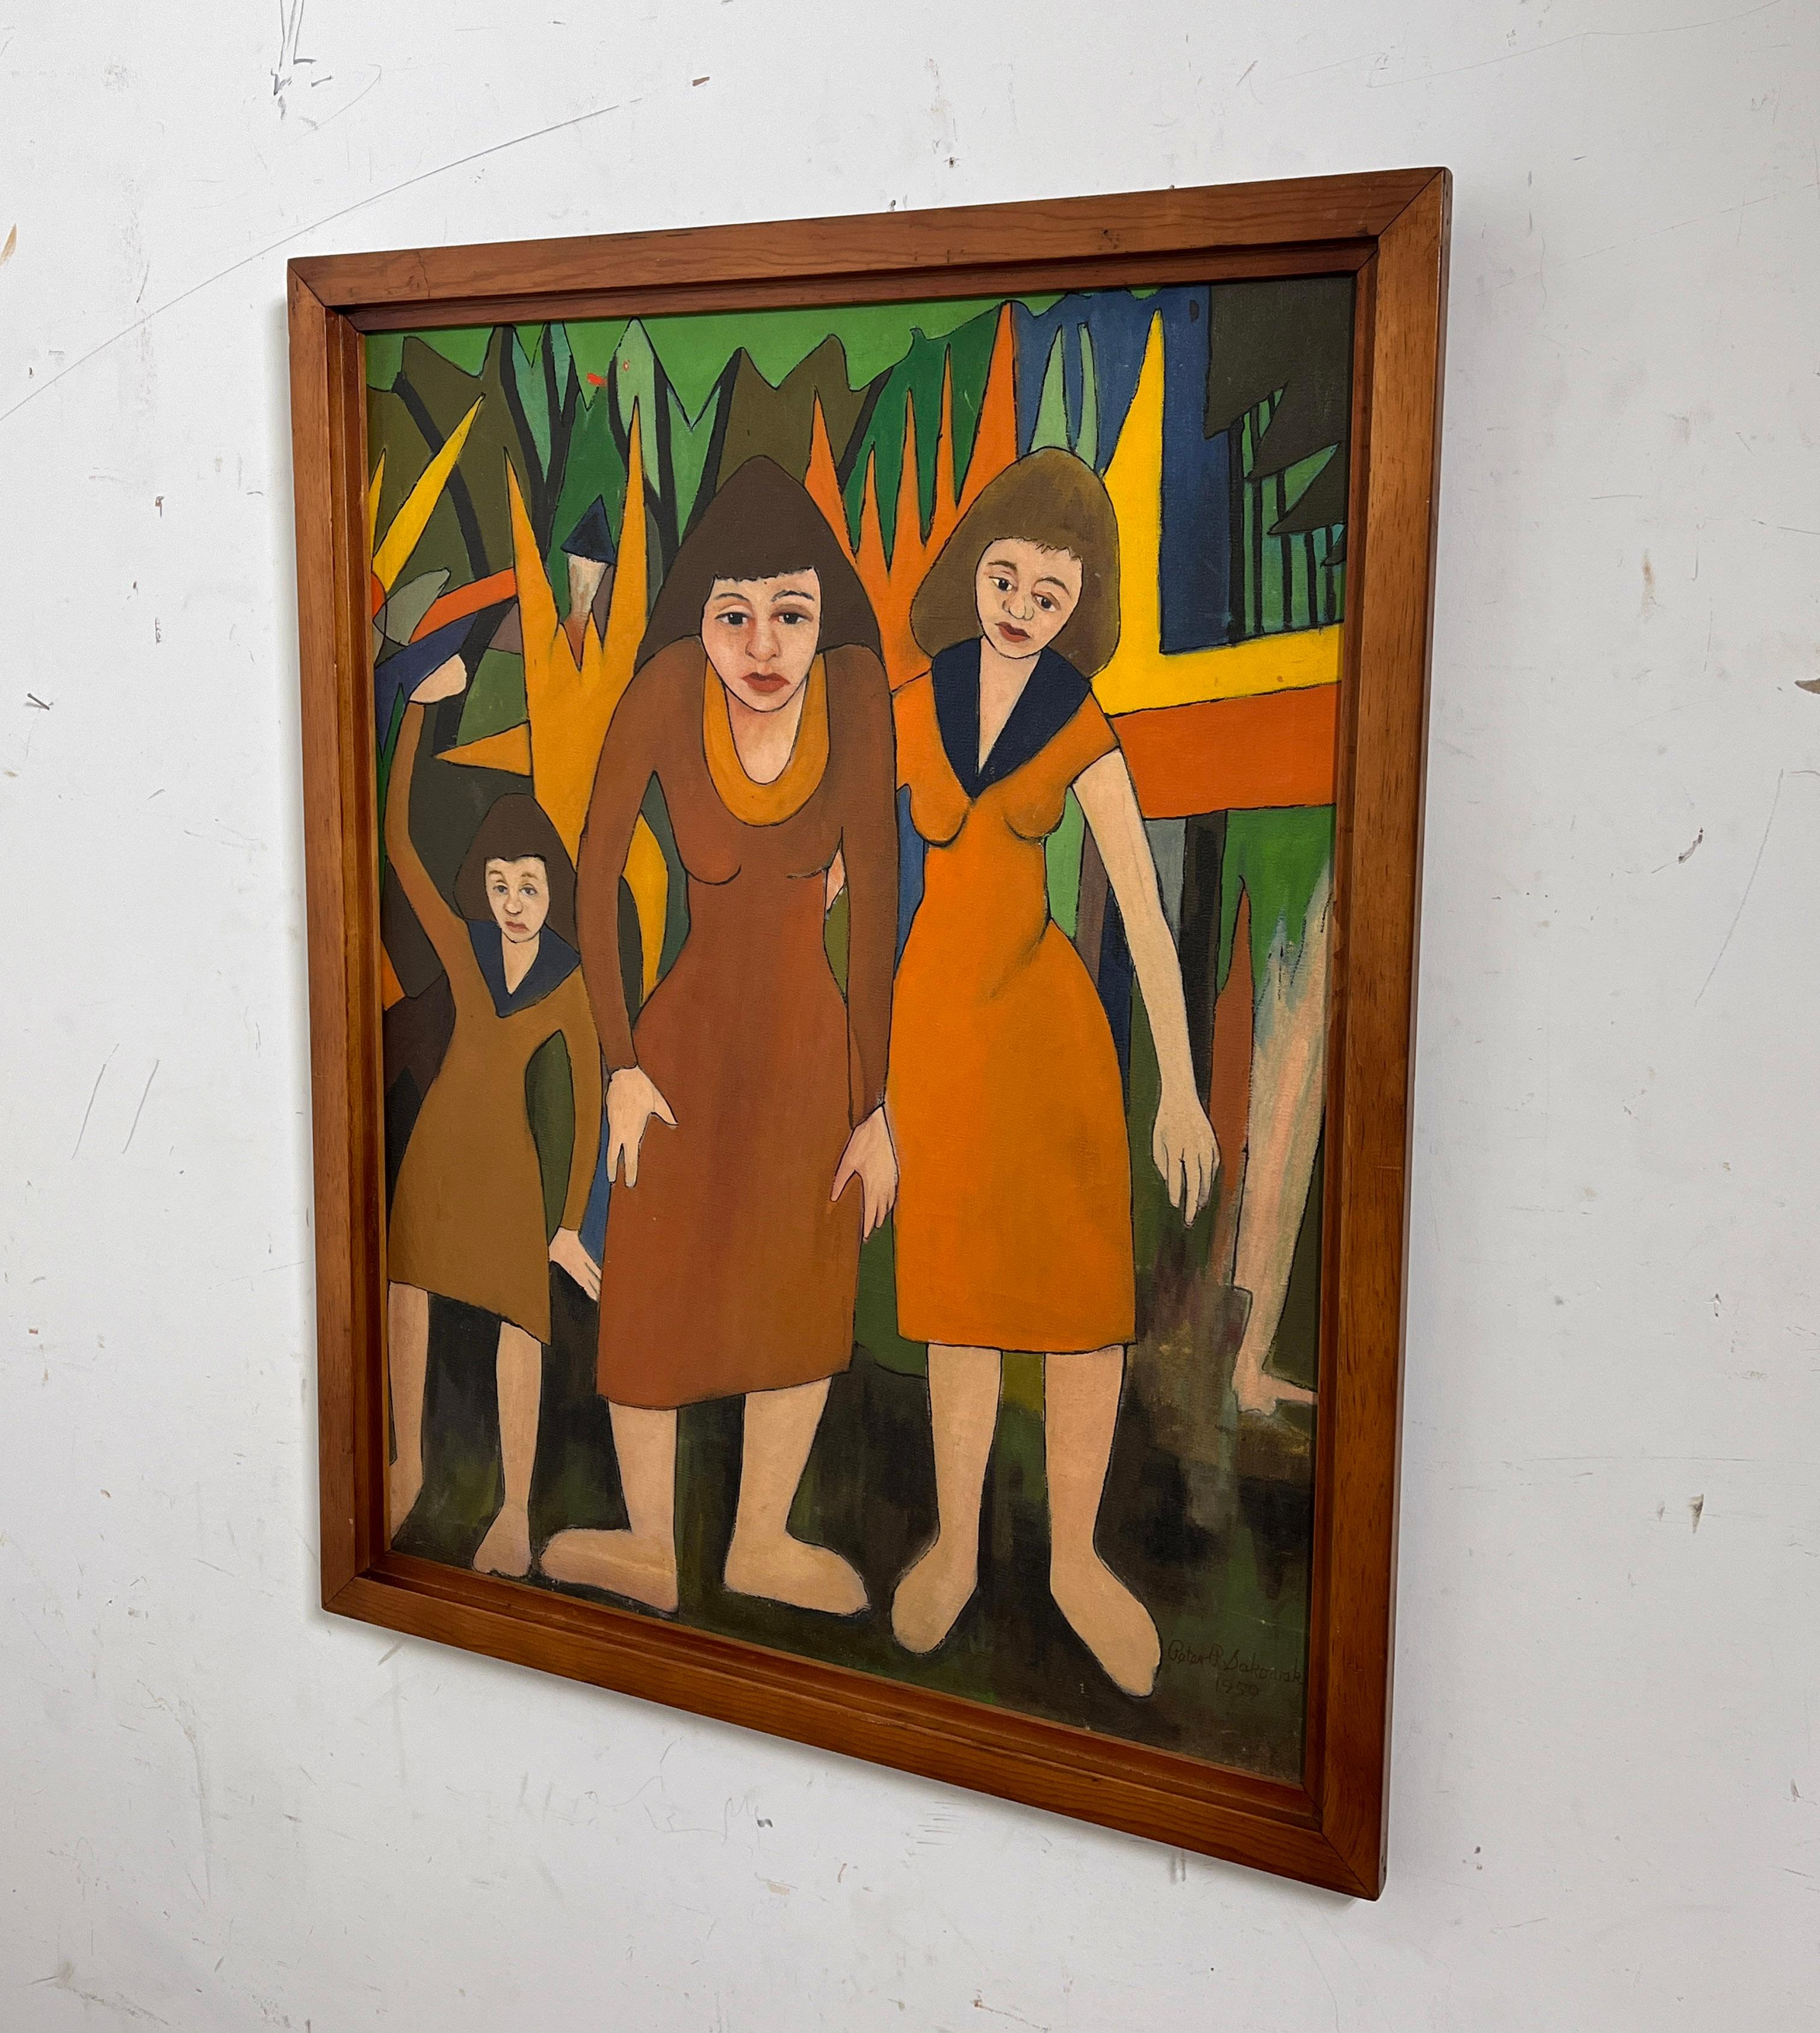 Nous avons récemment acquis un certain nombre de peintures provenant de la succession du célèbre artiste marginal Peter Paul Sakowski (1915-2000) de Holyoke, Massachusetts. Son style tend à varier d'une qualité graphique illustrative au cubisme plus